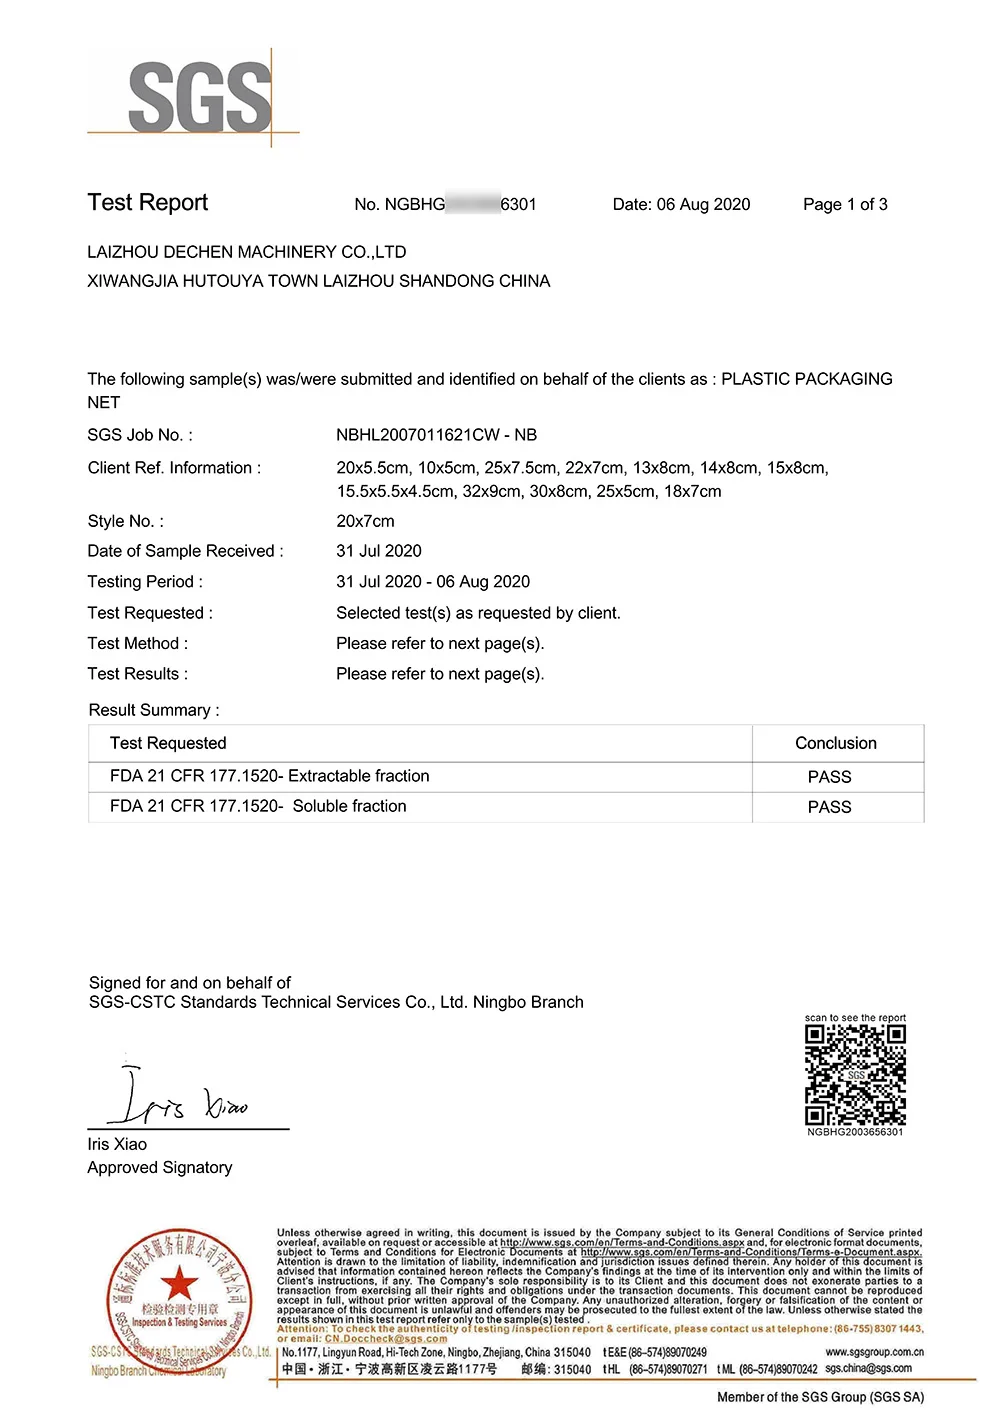 EPE Foam Net Certificate